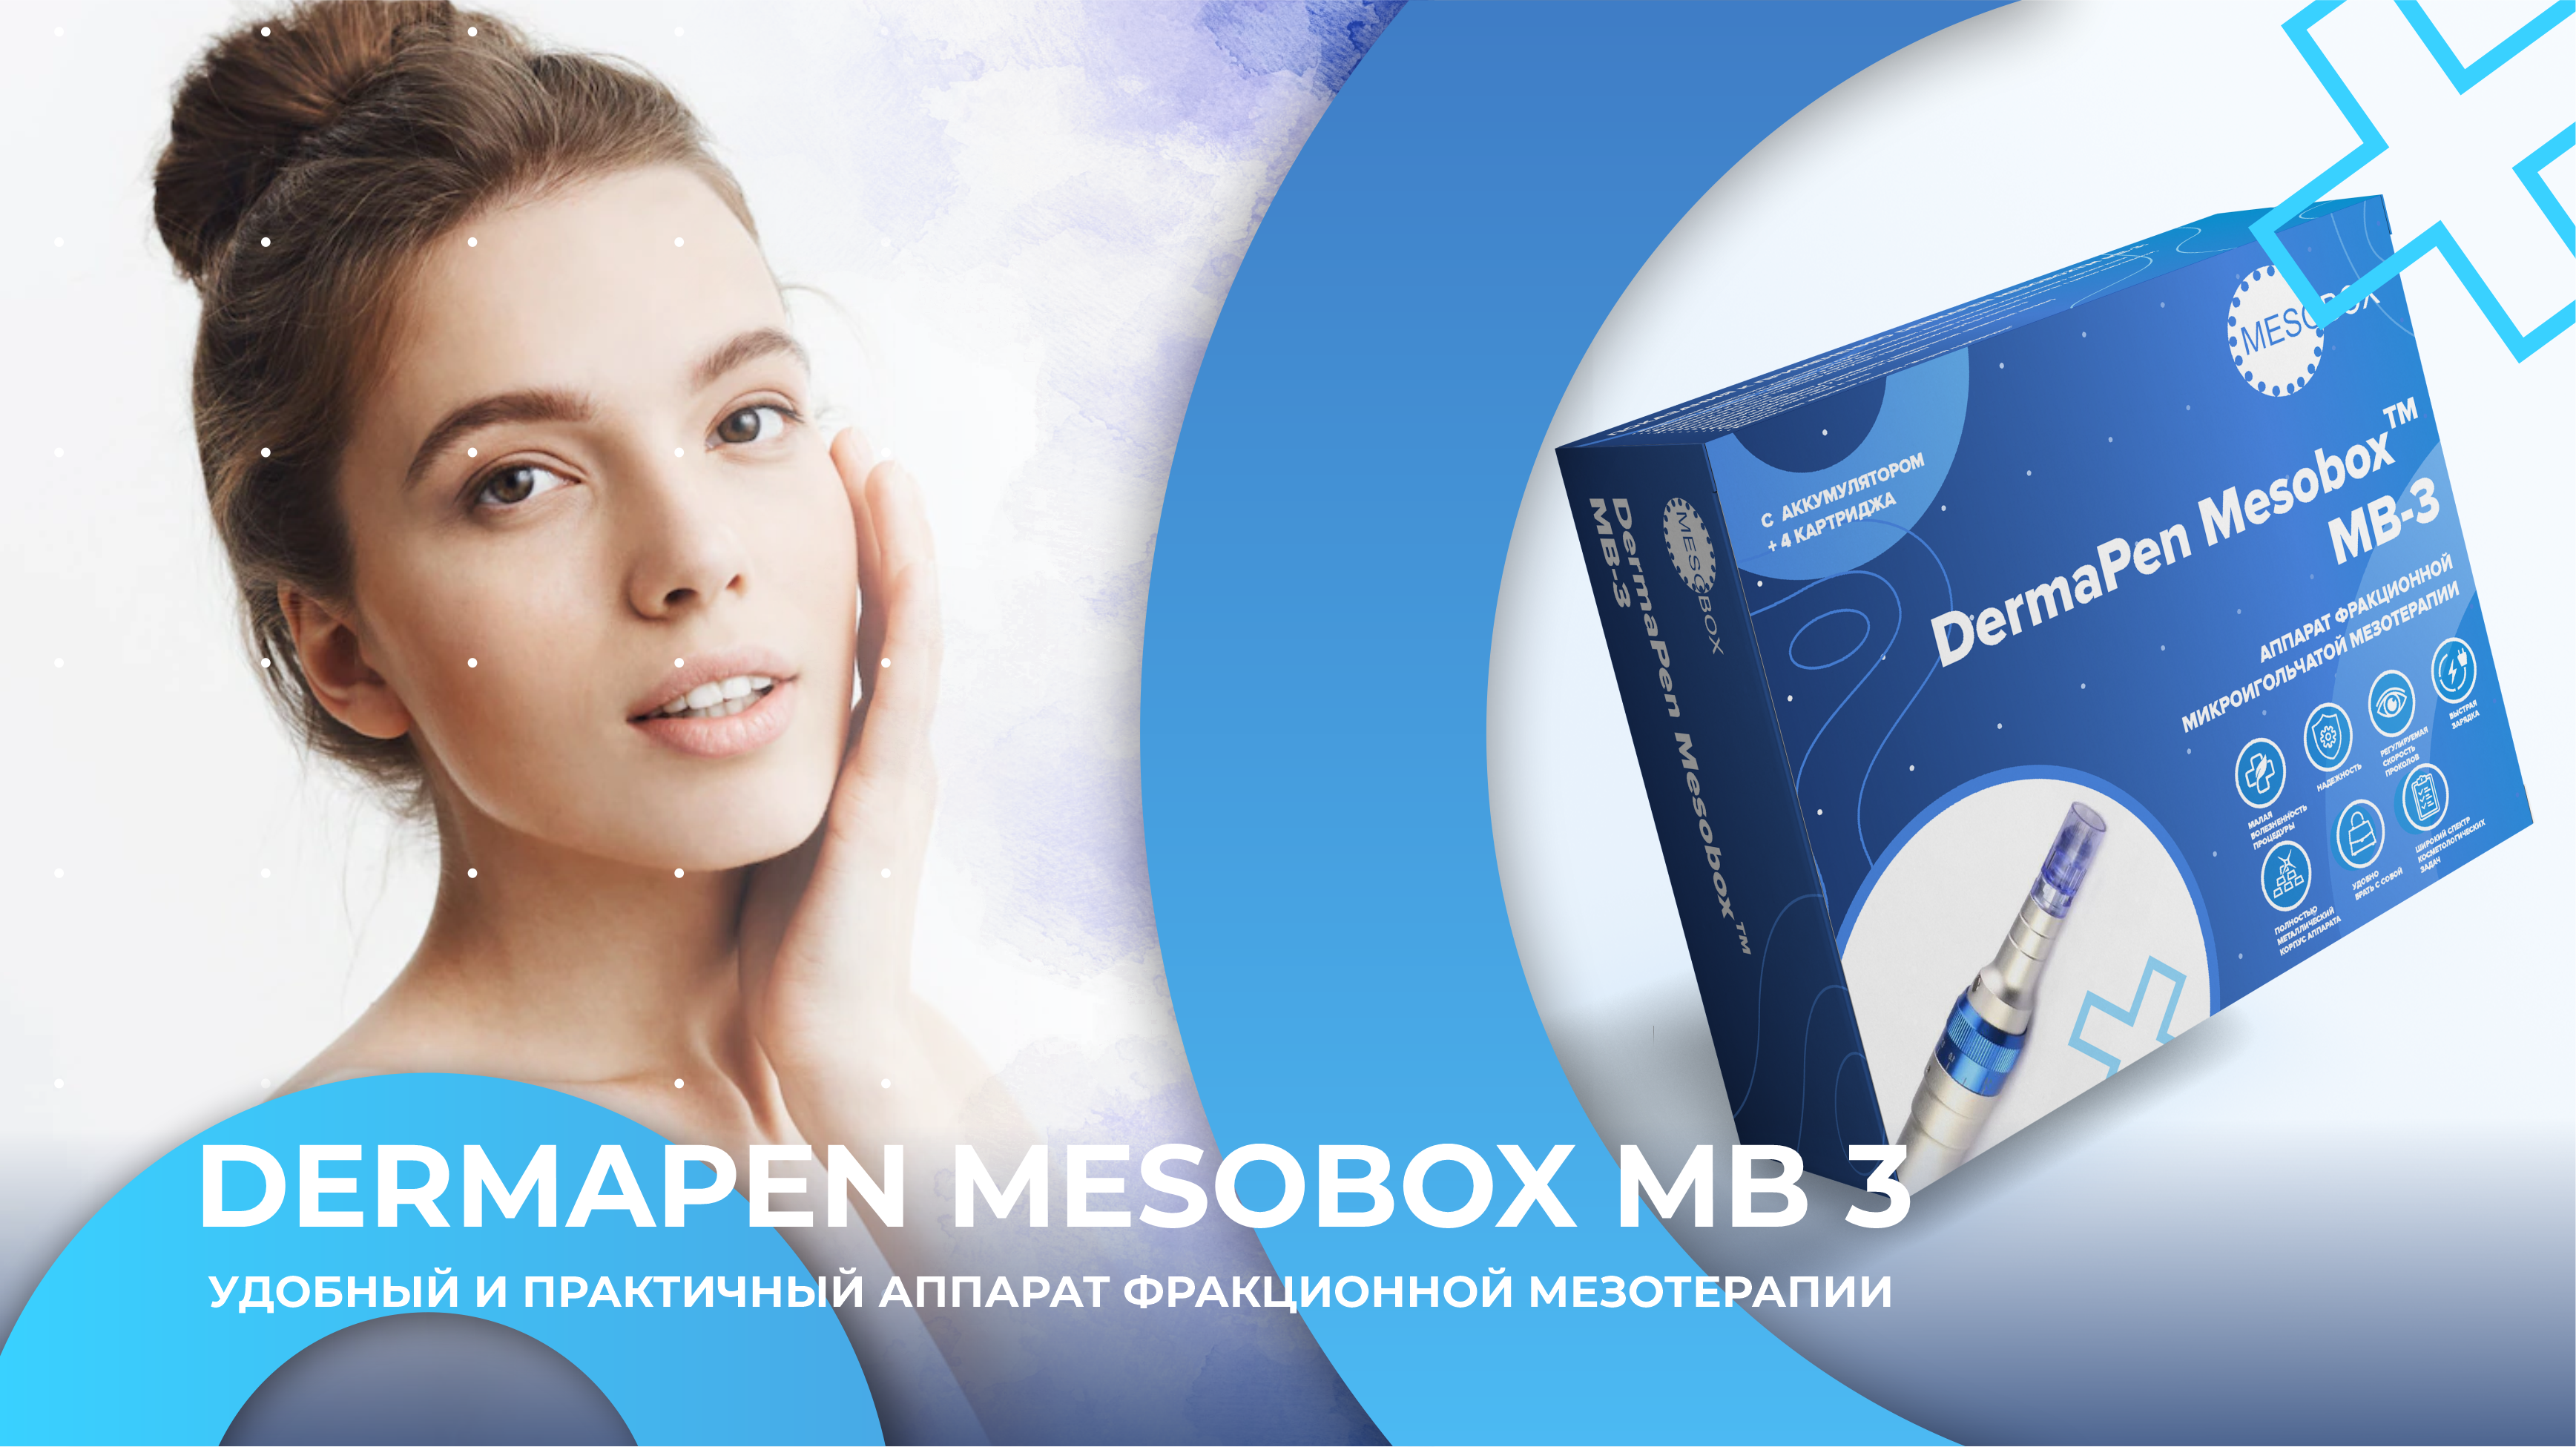 Dermapen MESOBOX MB 3 – профессиональный аккумуляторный аппарат фракционной мезотерапии